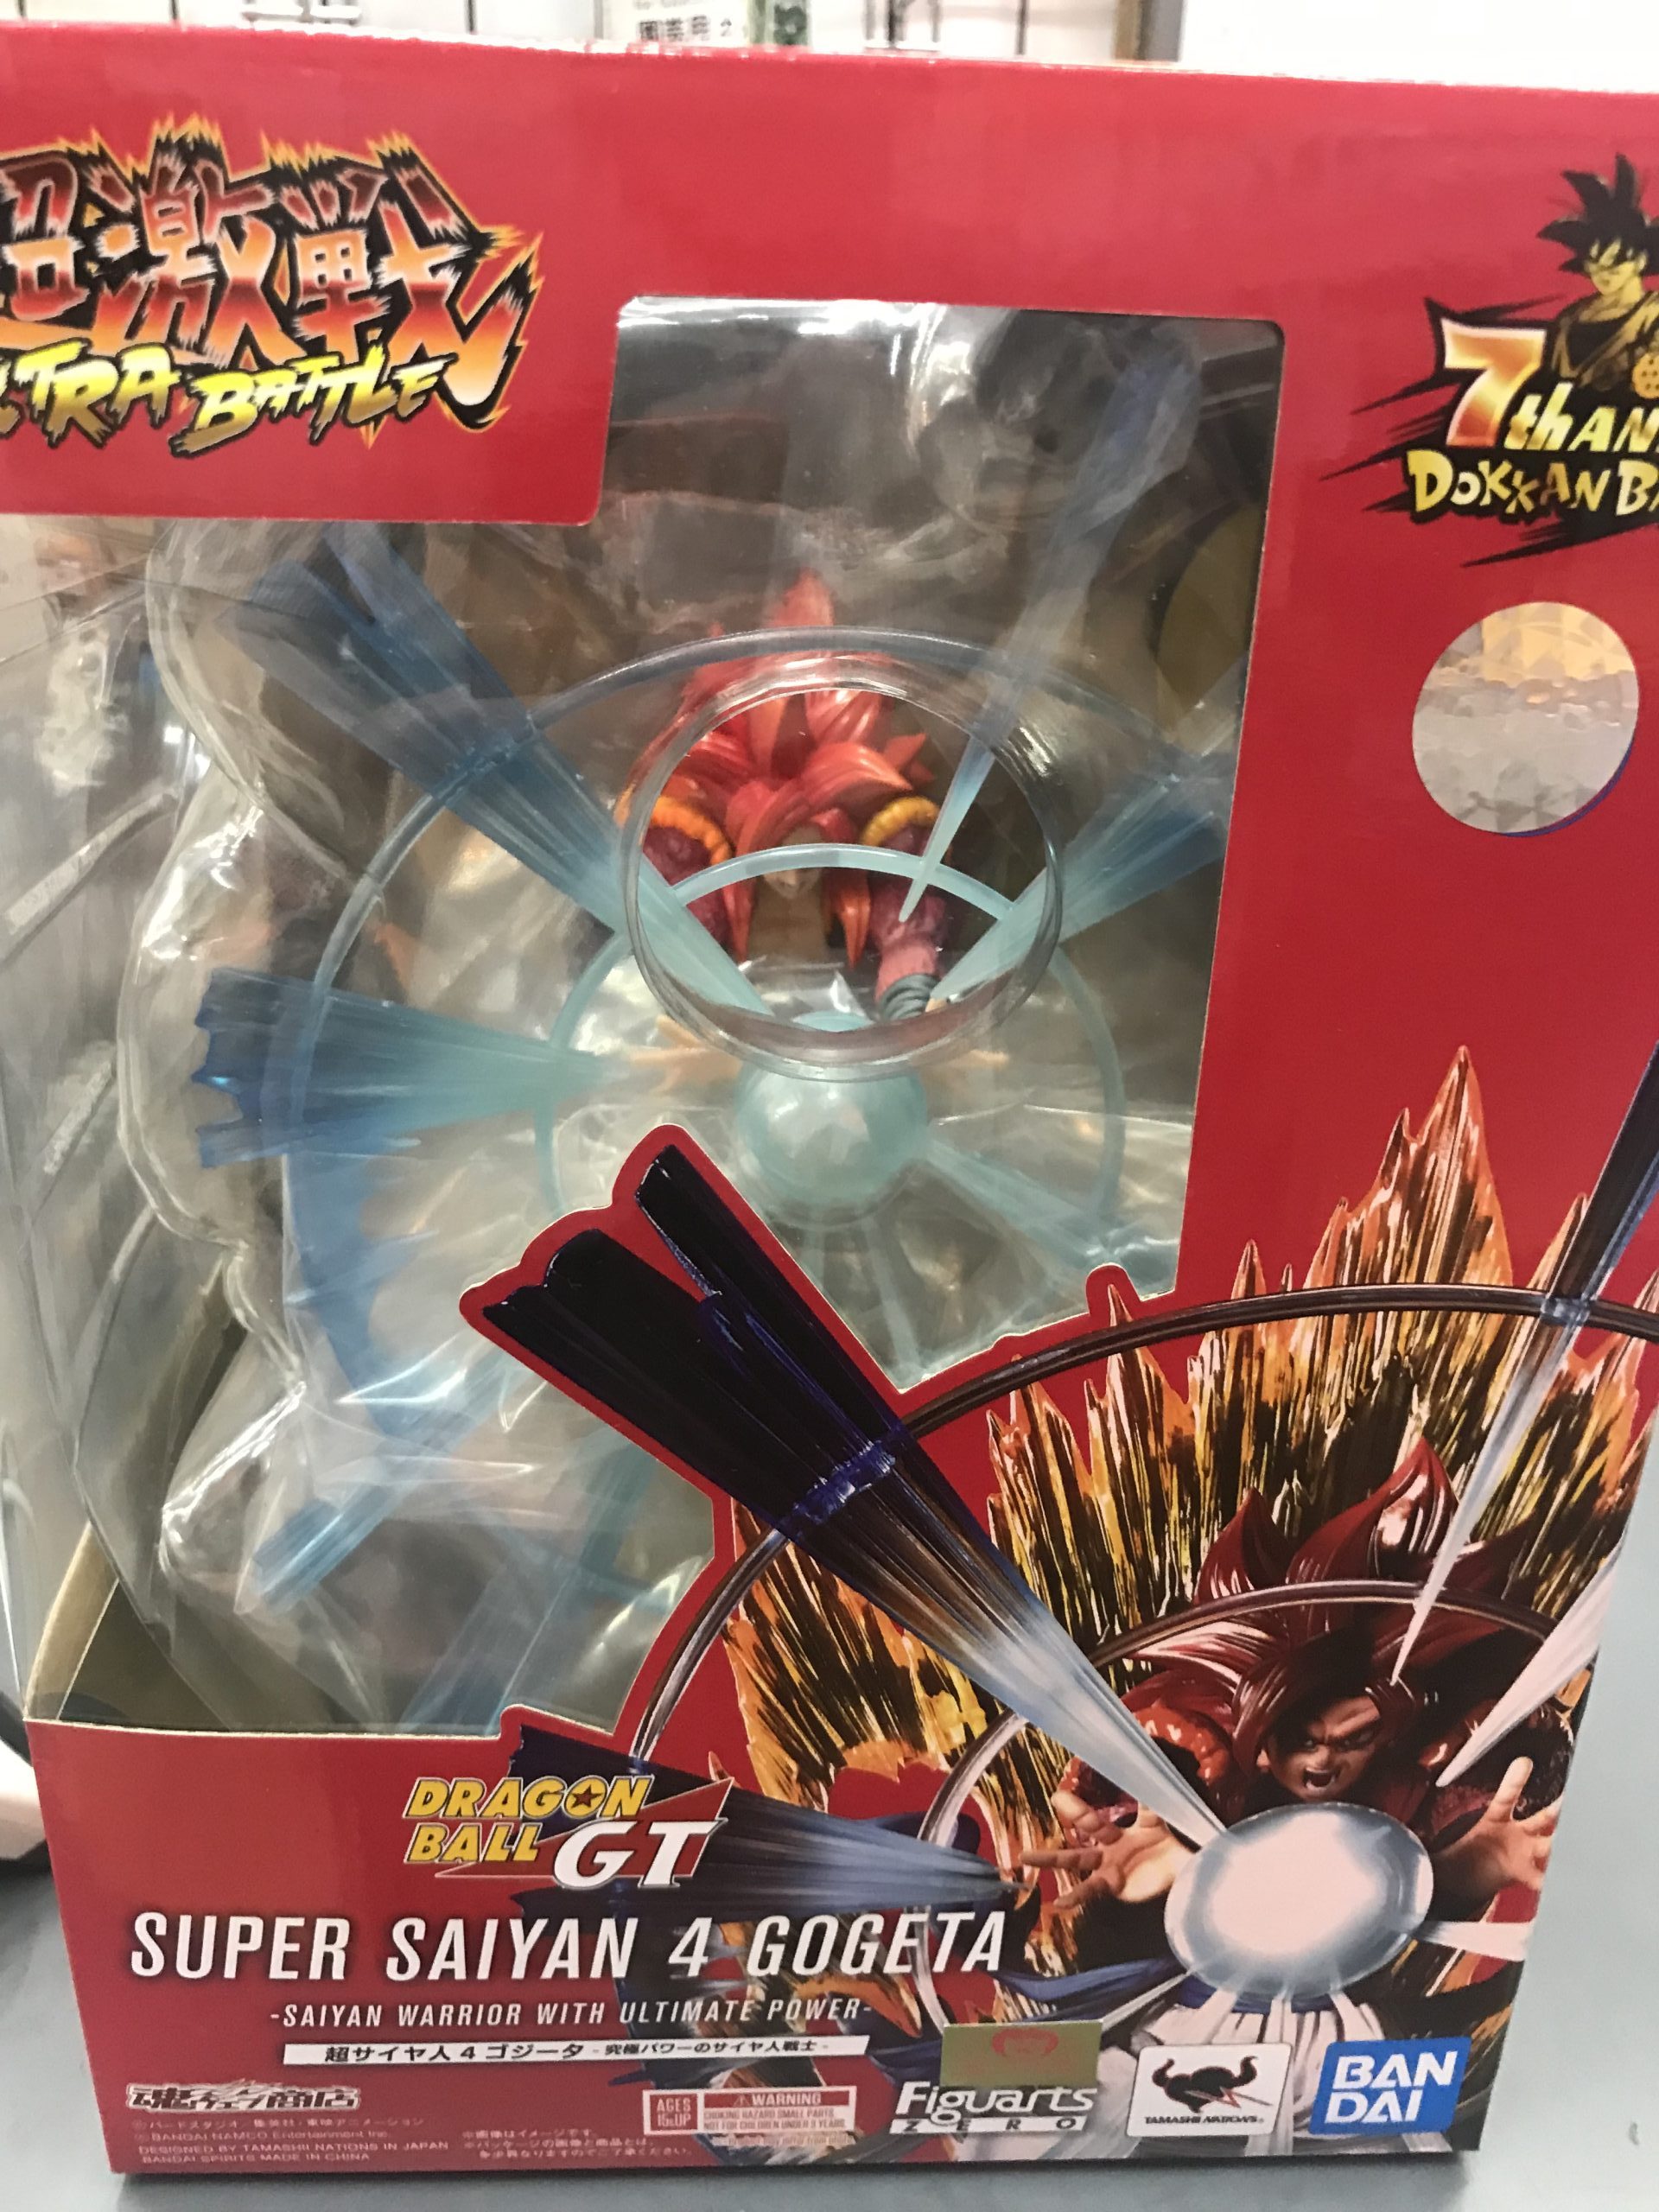 ドッカンバトル7周年×フィギュアーツZERO[超激戦]コラボ 超サイヤ人4ゴジータ -究極パワーのサイヤ人戦士